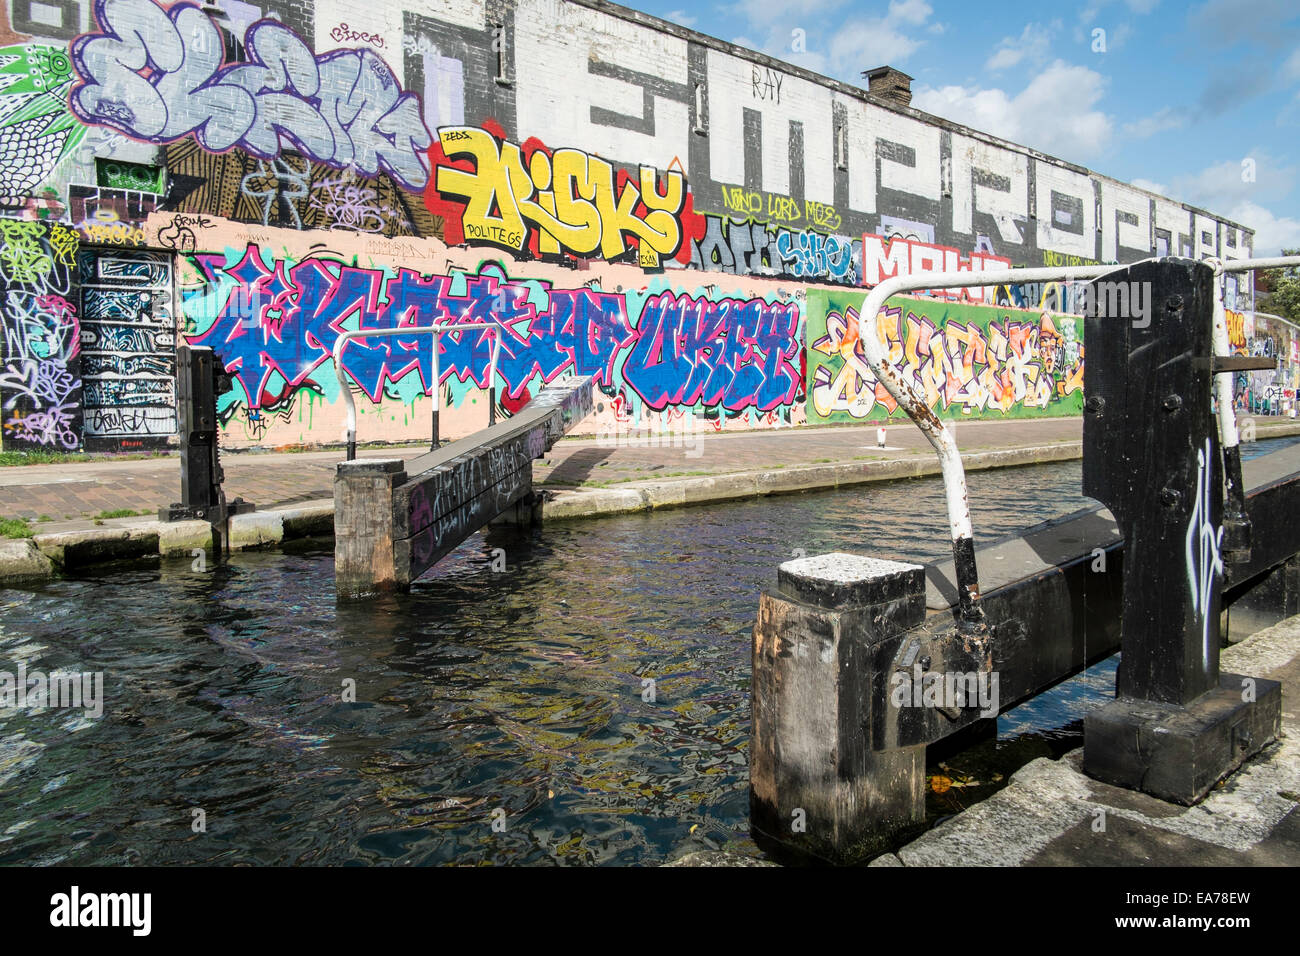 Hertford canal lock hackney waterway graffiti UK Stock Photo